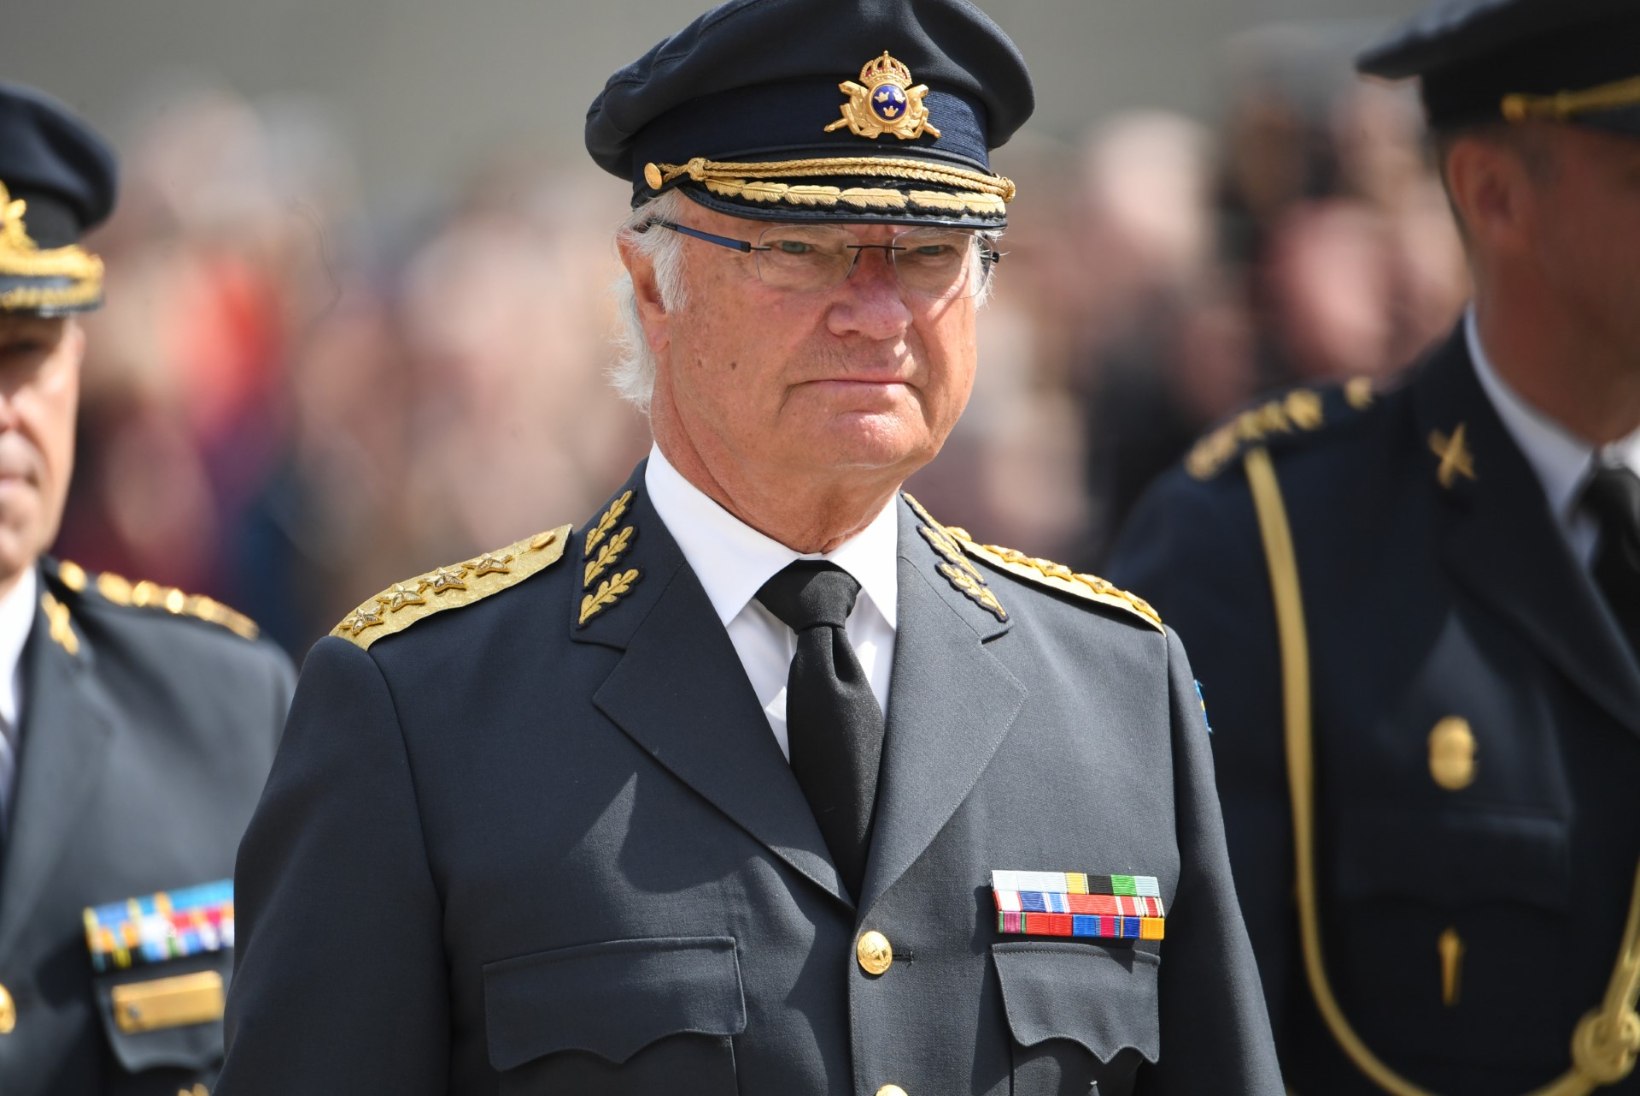 GALERII | Rootsi kuningas Carl XVI Gustaf tähistab 73. sünnipäeva